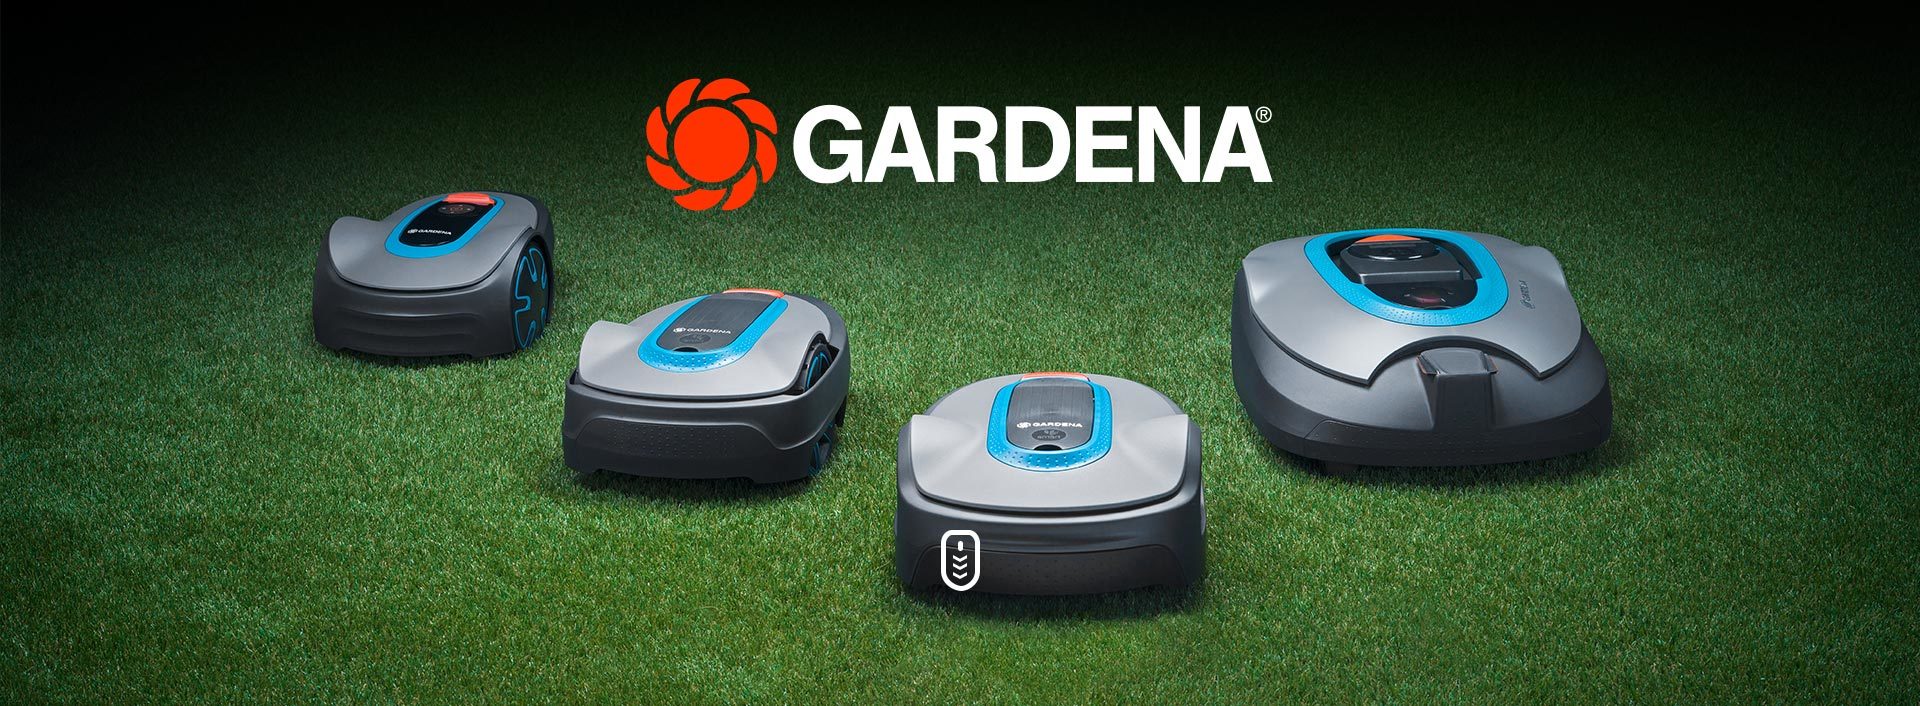 Roboty Gardena - nowy